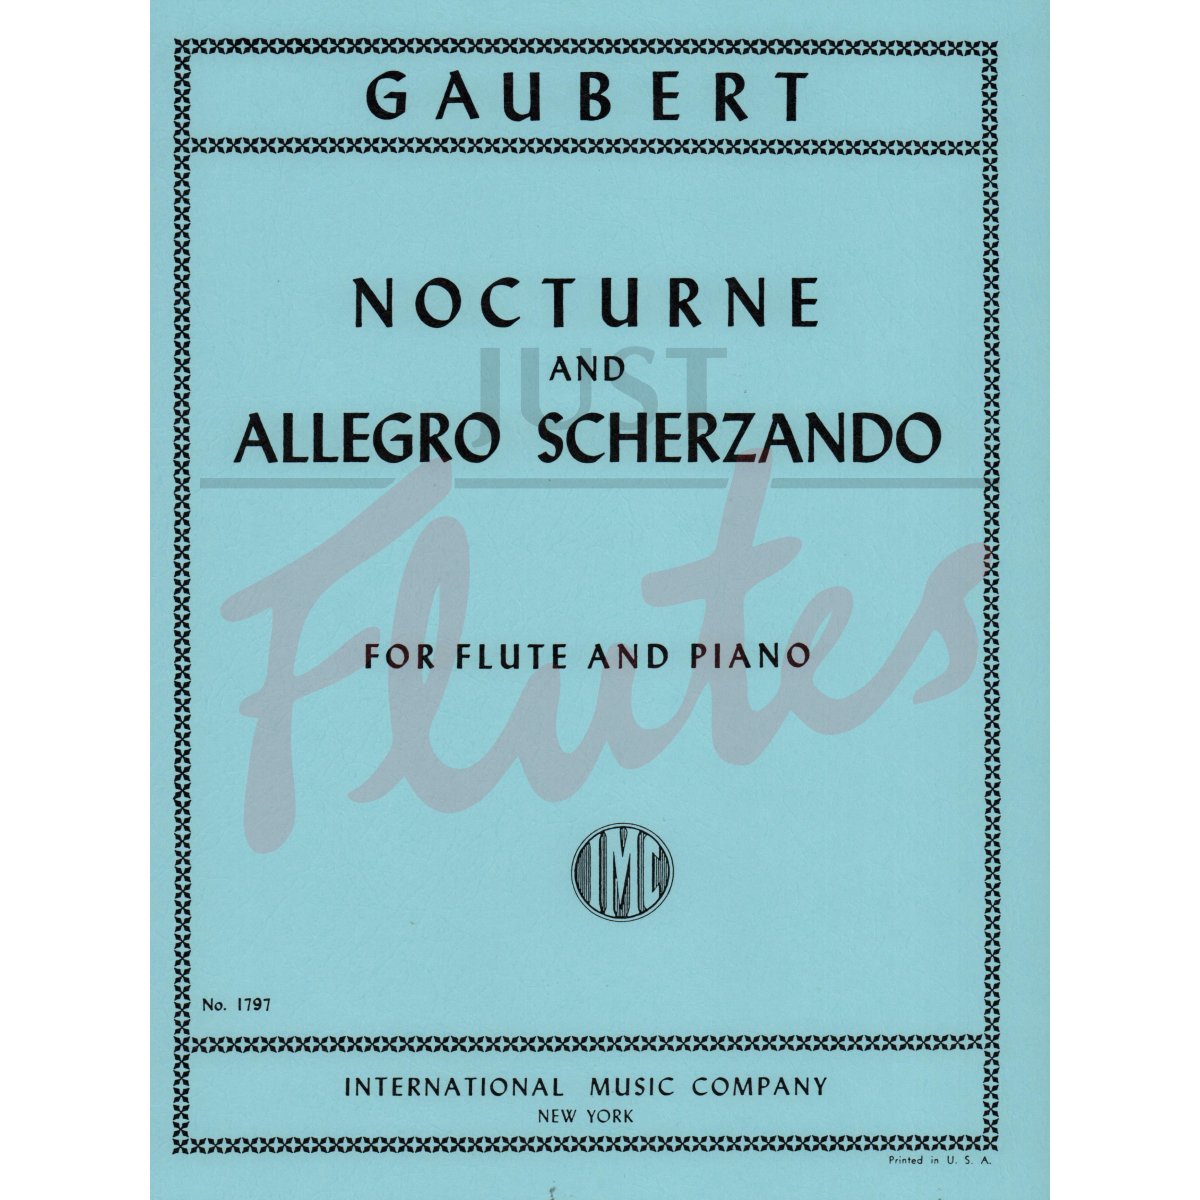 Nocturne and Allegro Scherzando for Flute and Piano